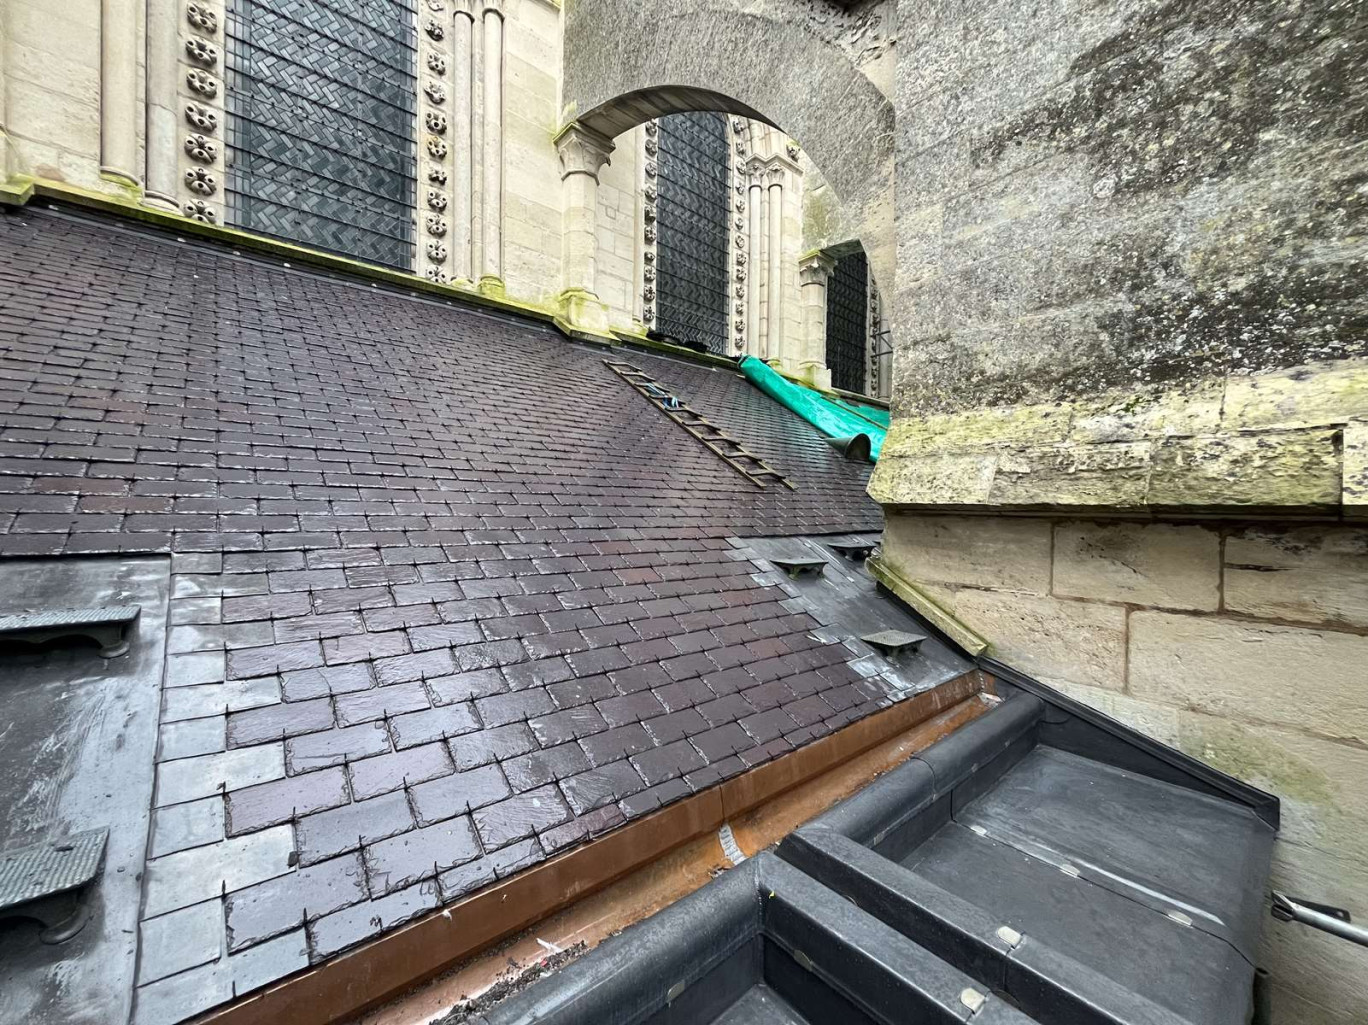 Les ardoises mais aussi les chéneaux, les faîtages sont traitées sur la toiture de la cathédrale de Laon. Une ardoise violine du Pays de Galles est posée.